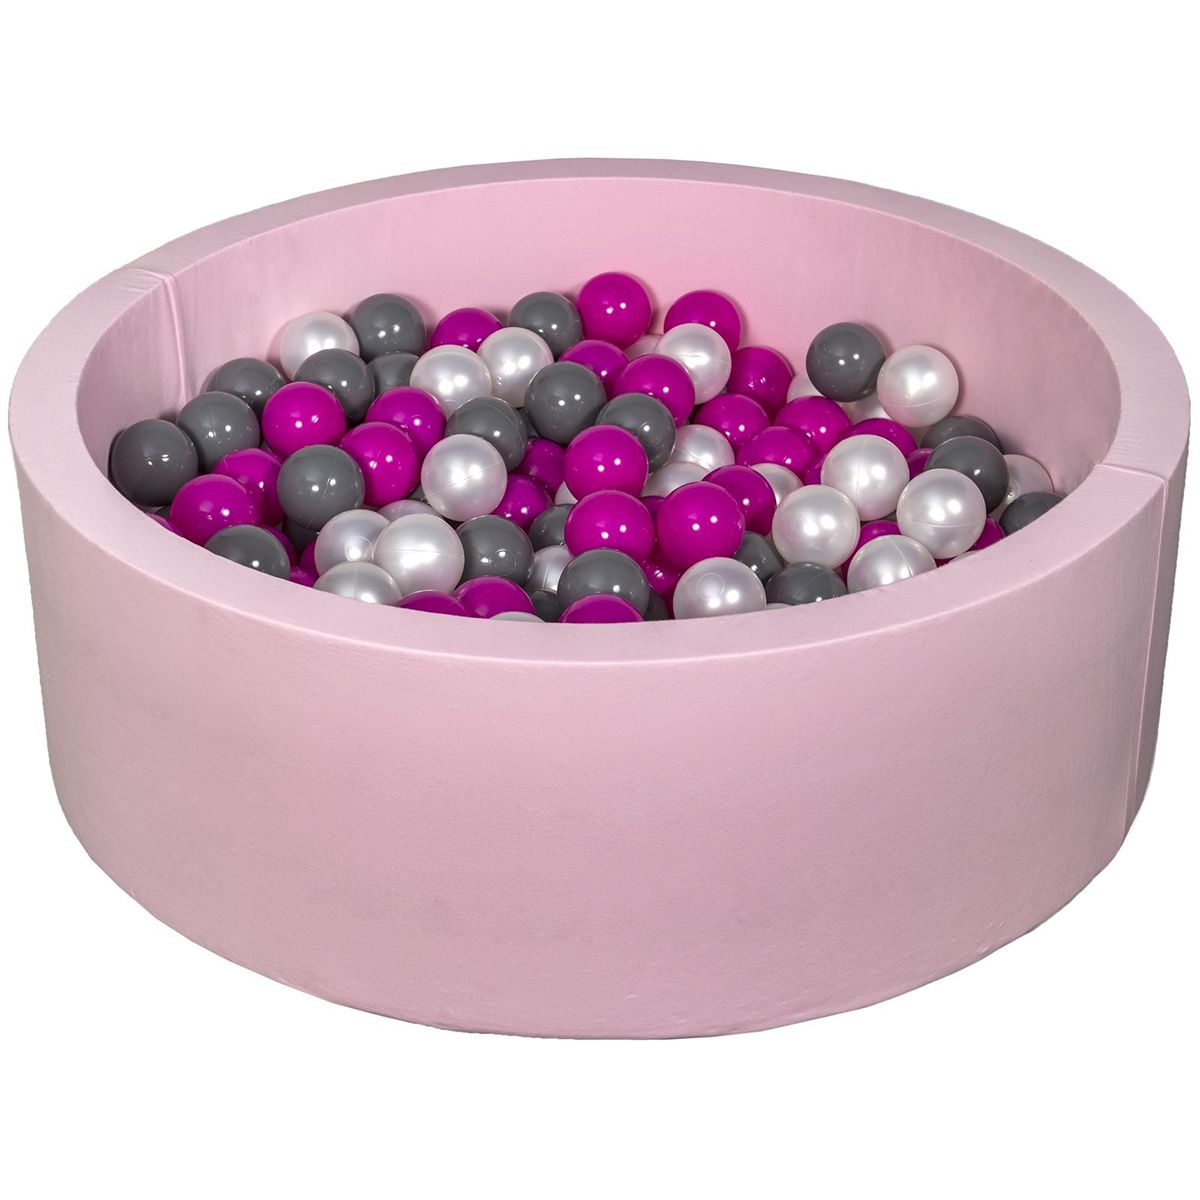  Piscine à balles Aire de jeu + 300 balles rose perle, rose, gris